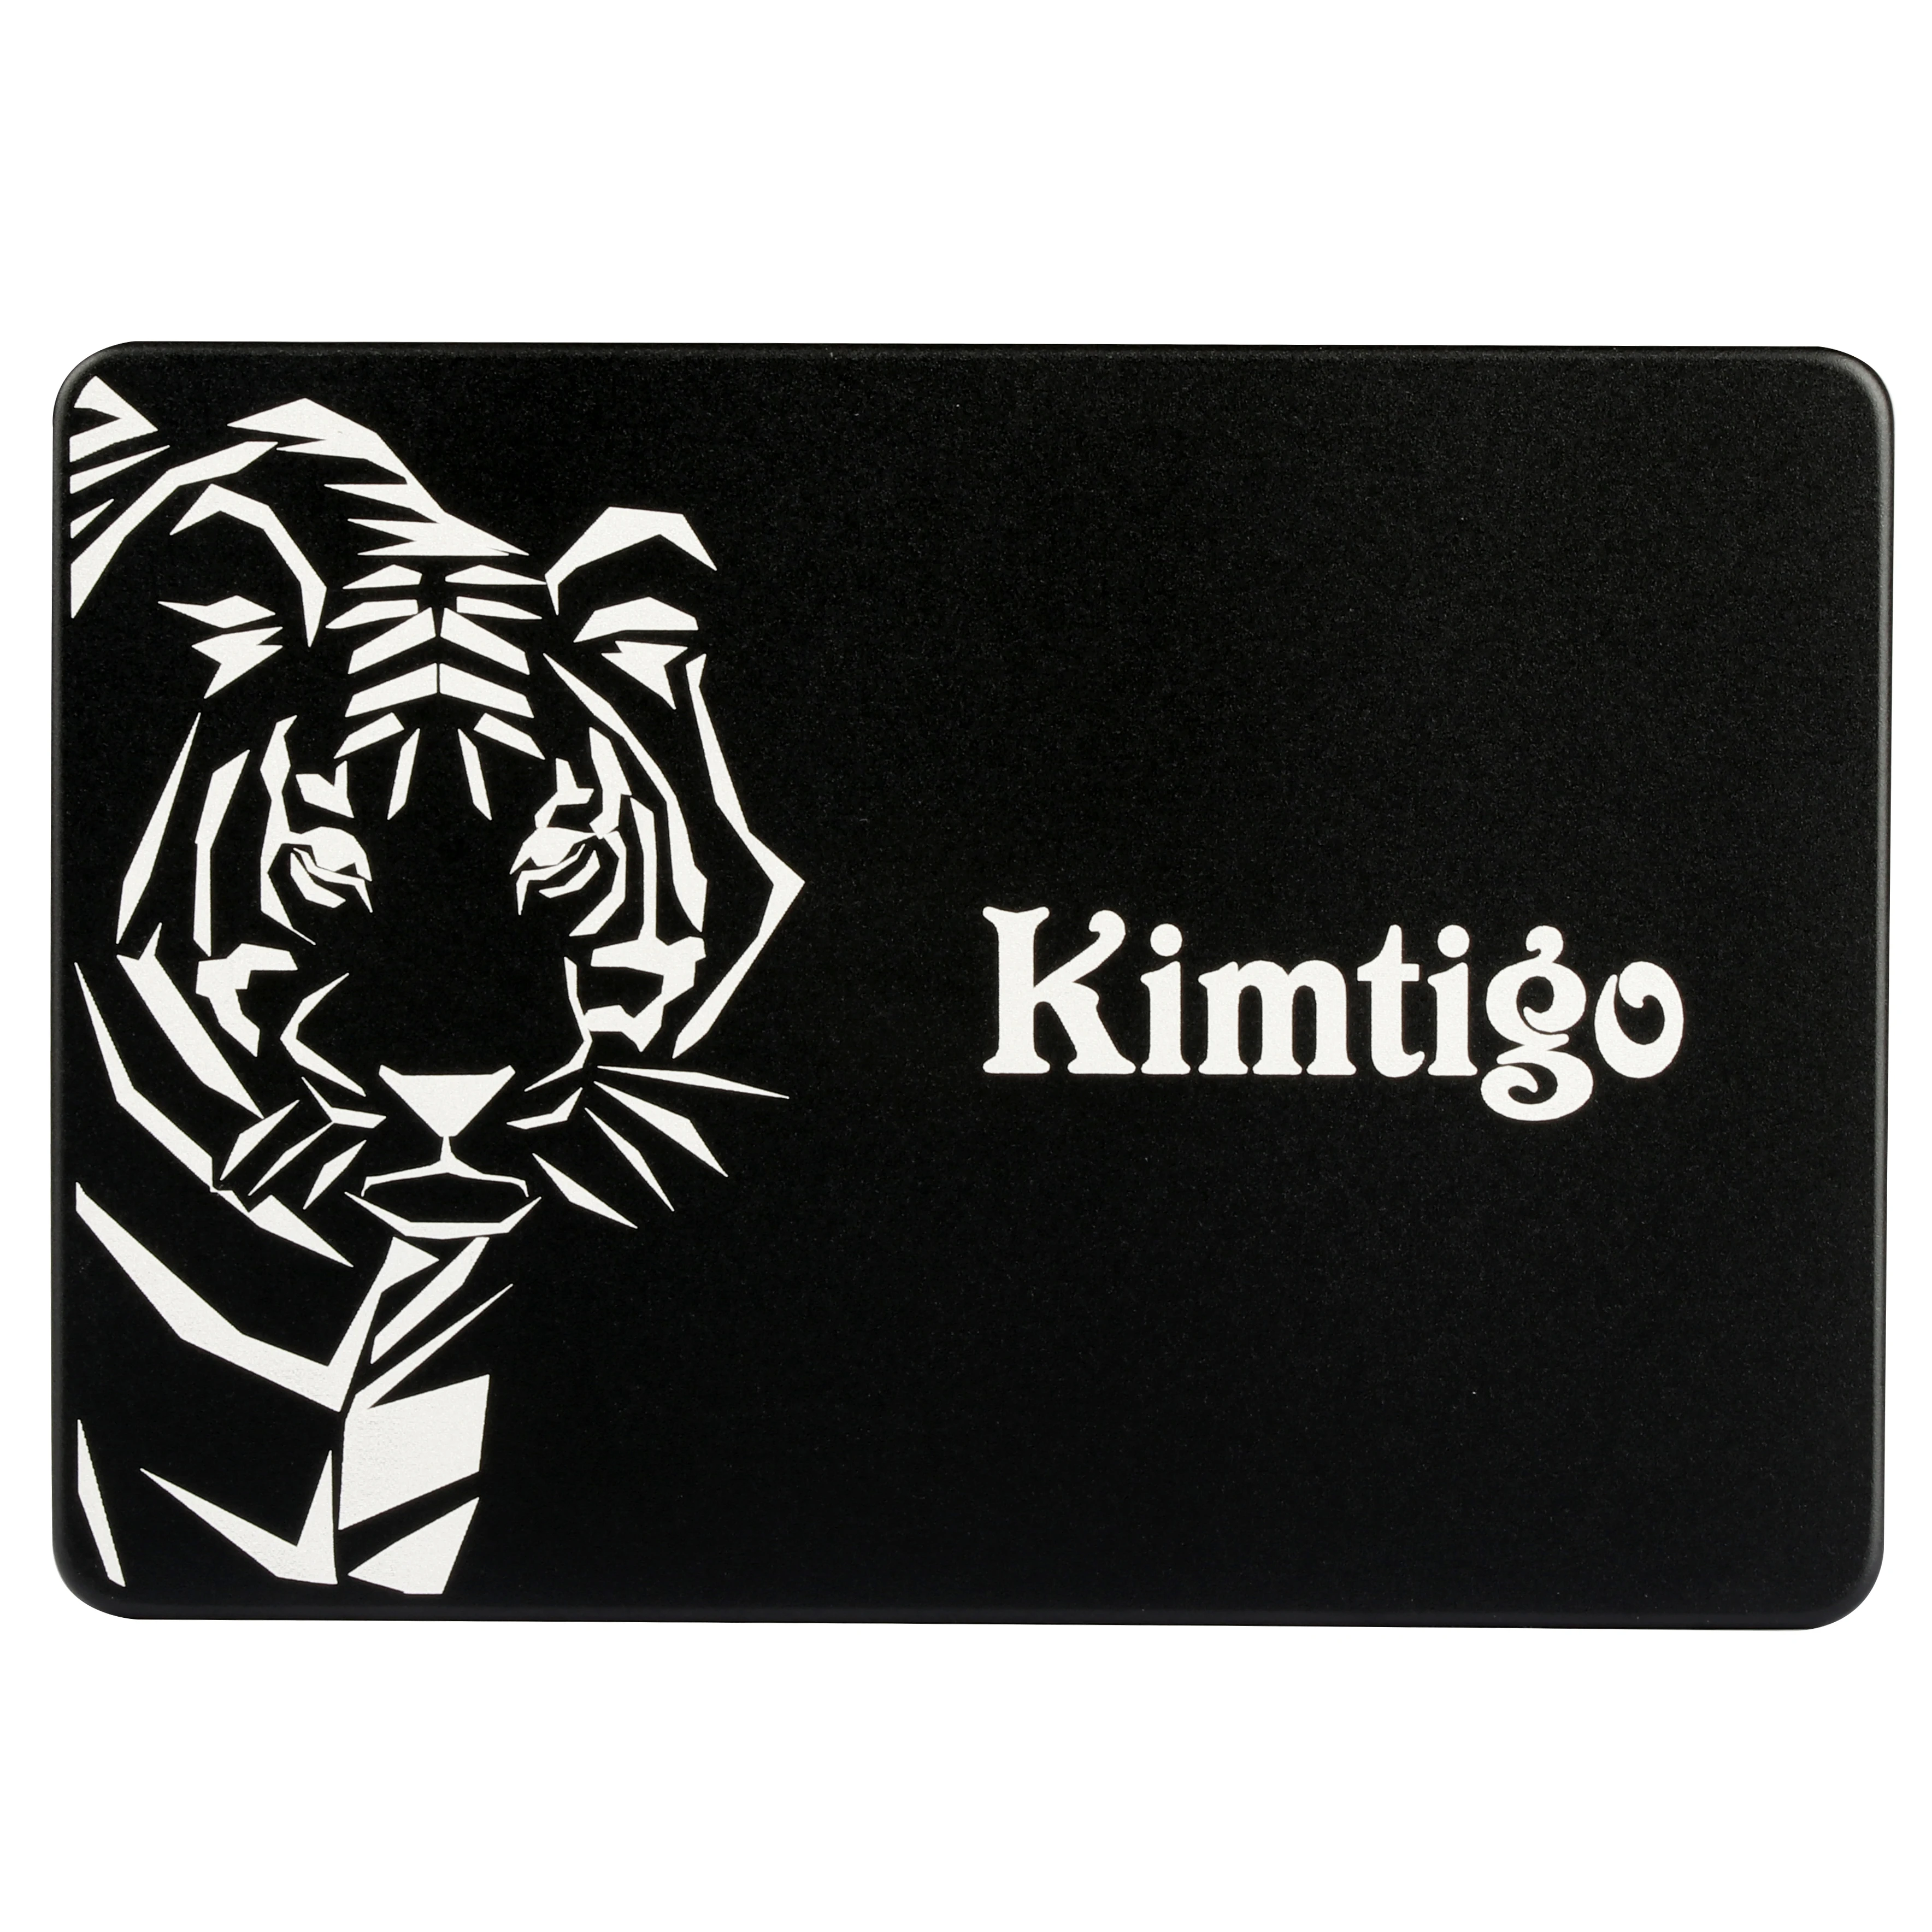 

KTA 320 Fast Speed 6gb/s SSD 128GB 256GB 512GB SATA 3 2.5" Internal SSD for Kimtigo, Black